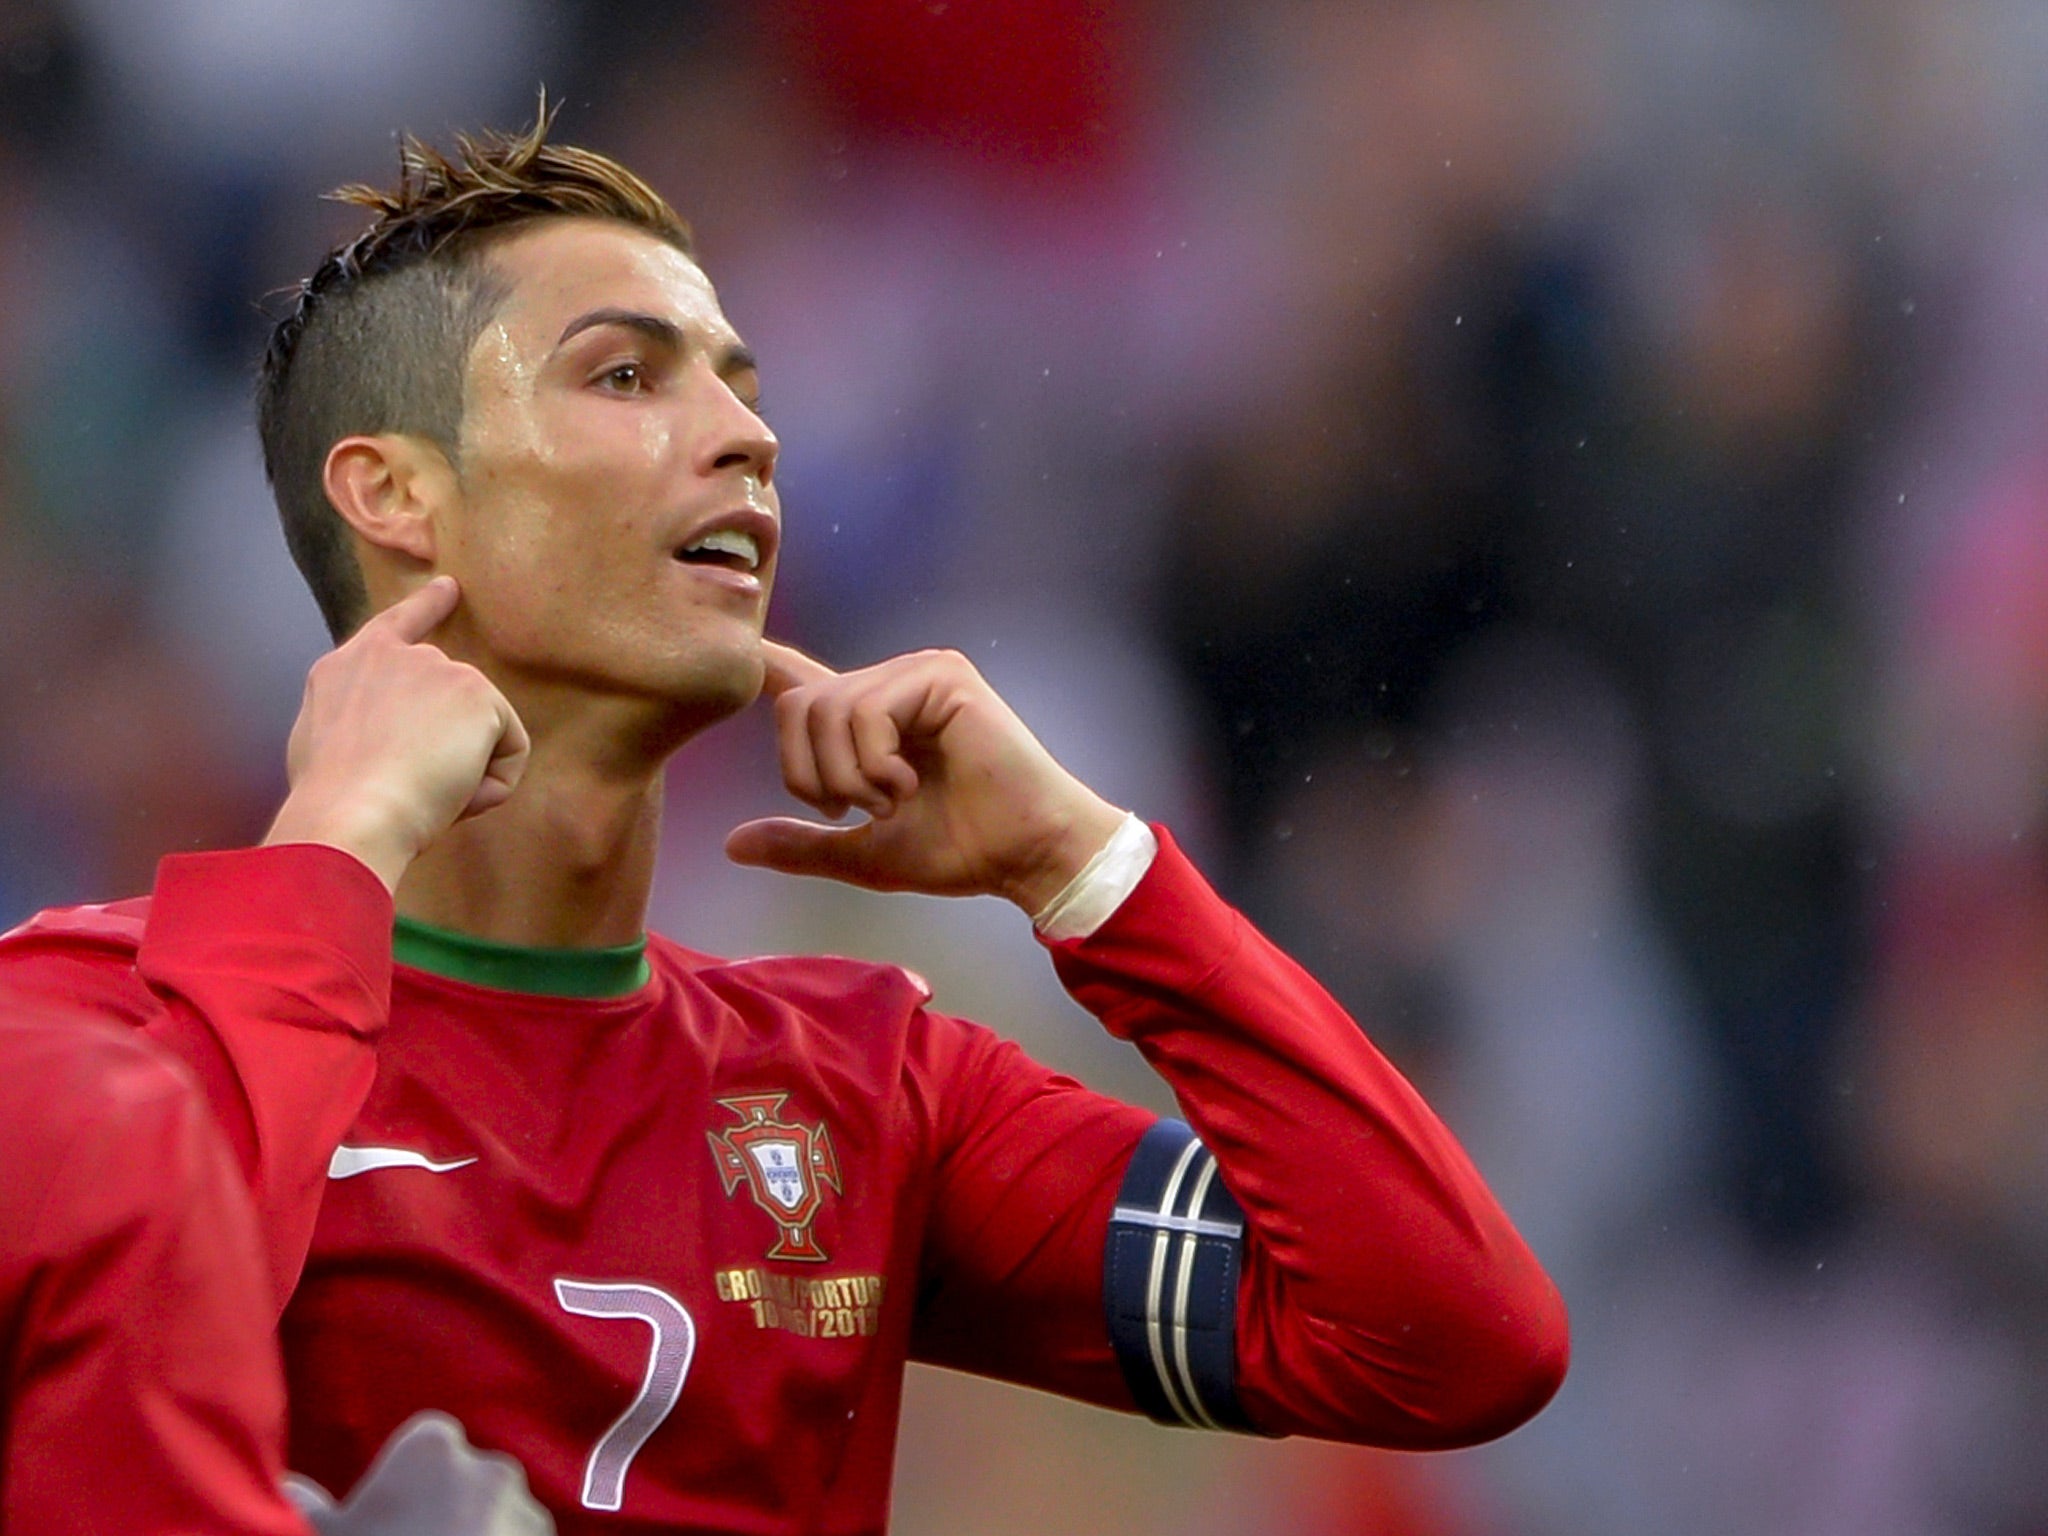 Cristiano Ronaldo in action for Portugal